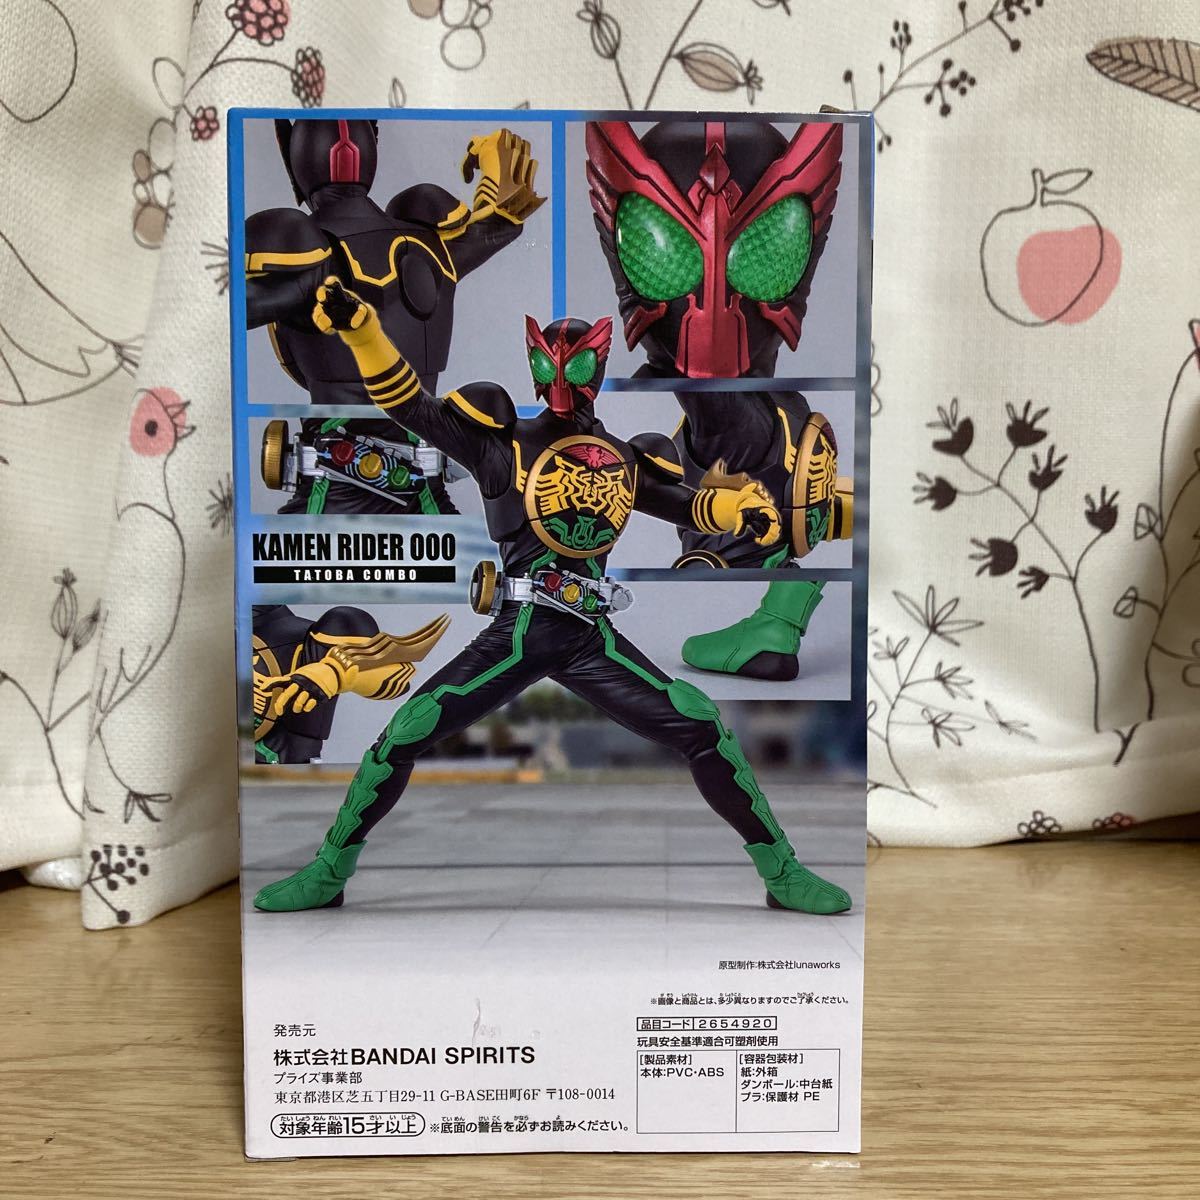  Kamen Rider o-z герой . изображение Kamen Rider o-ztatoba combo фигурка развлечения специальный подарок все один вид 